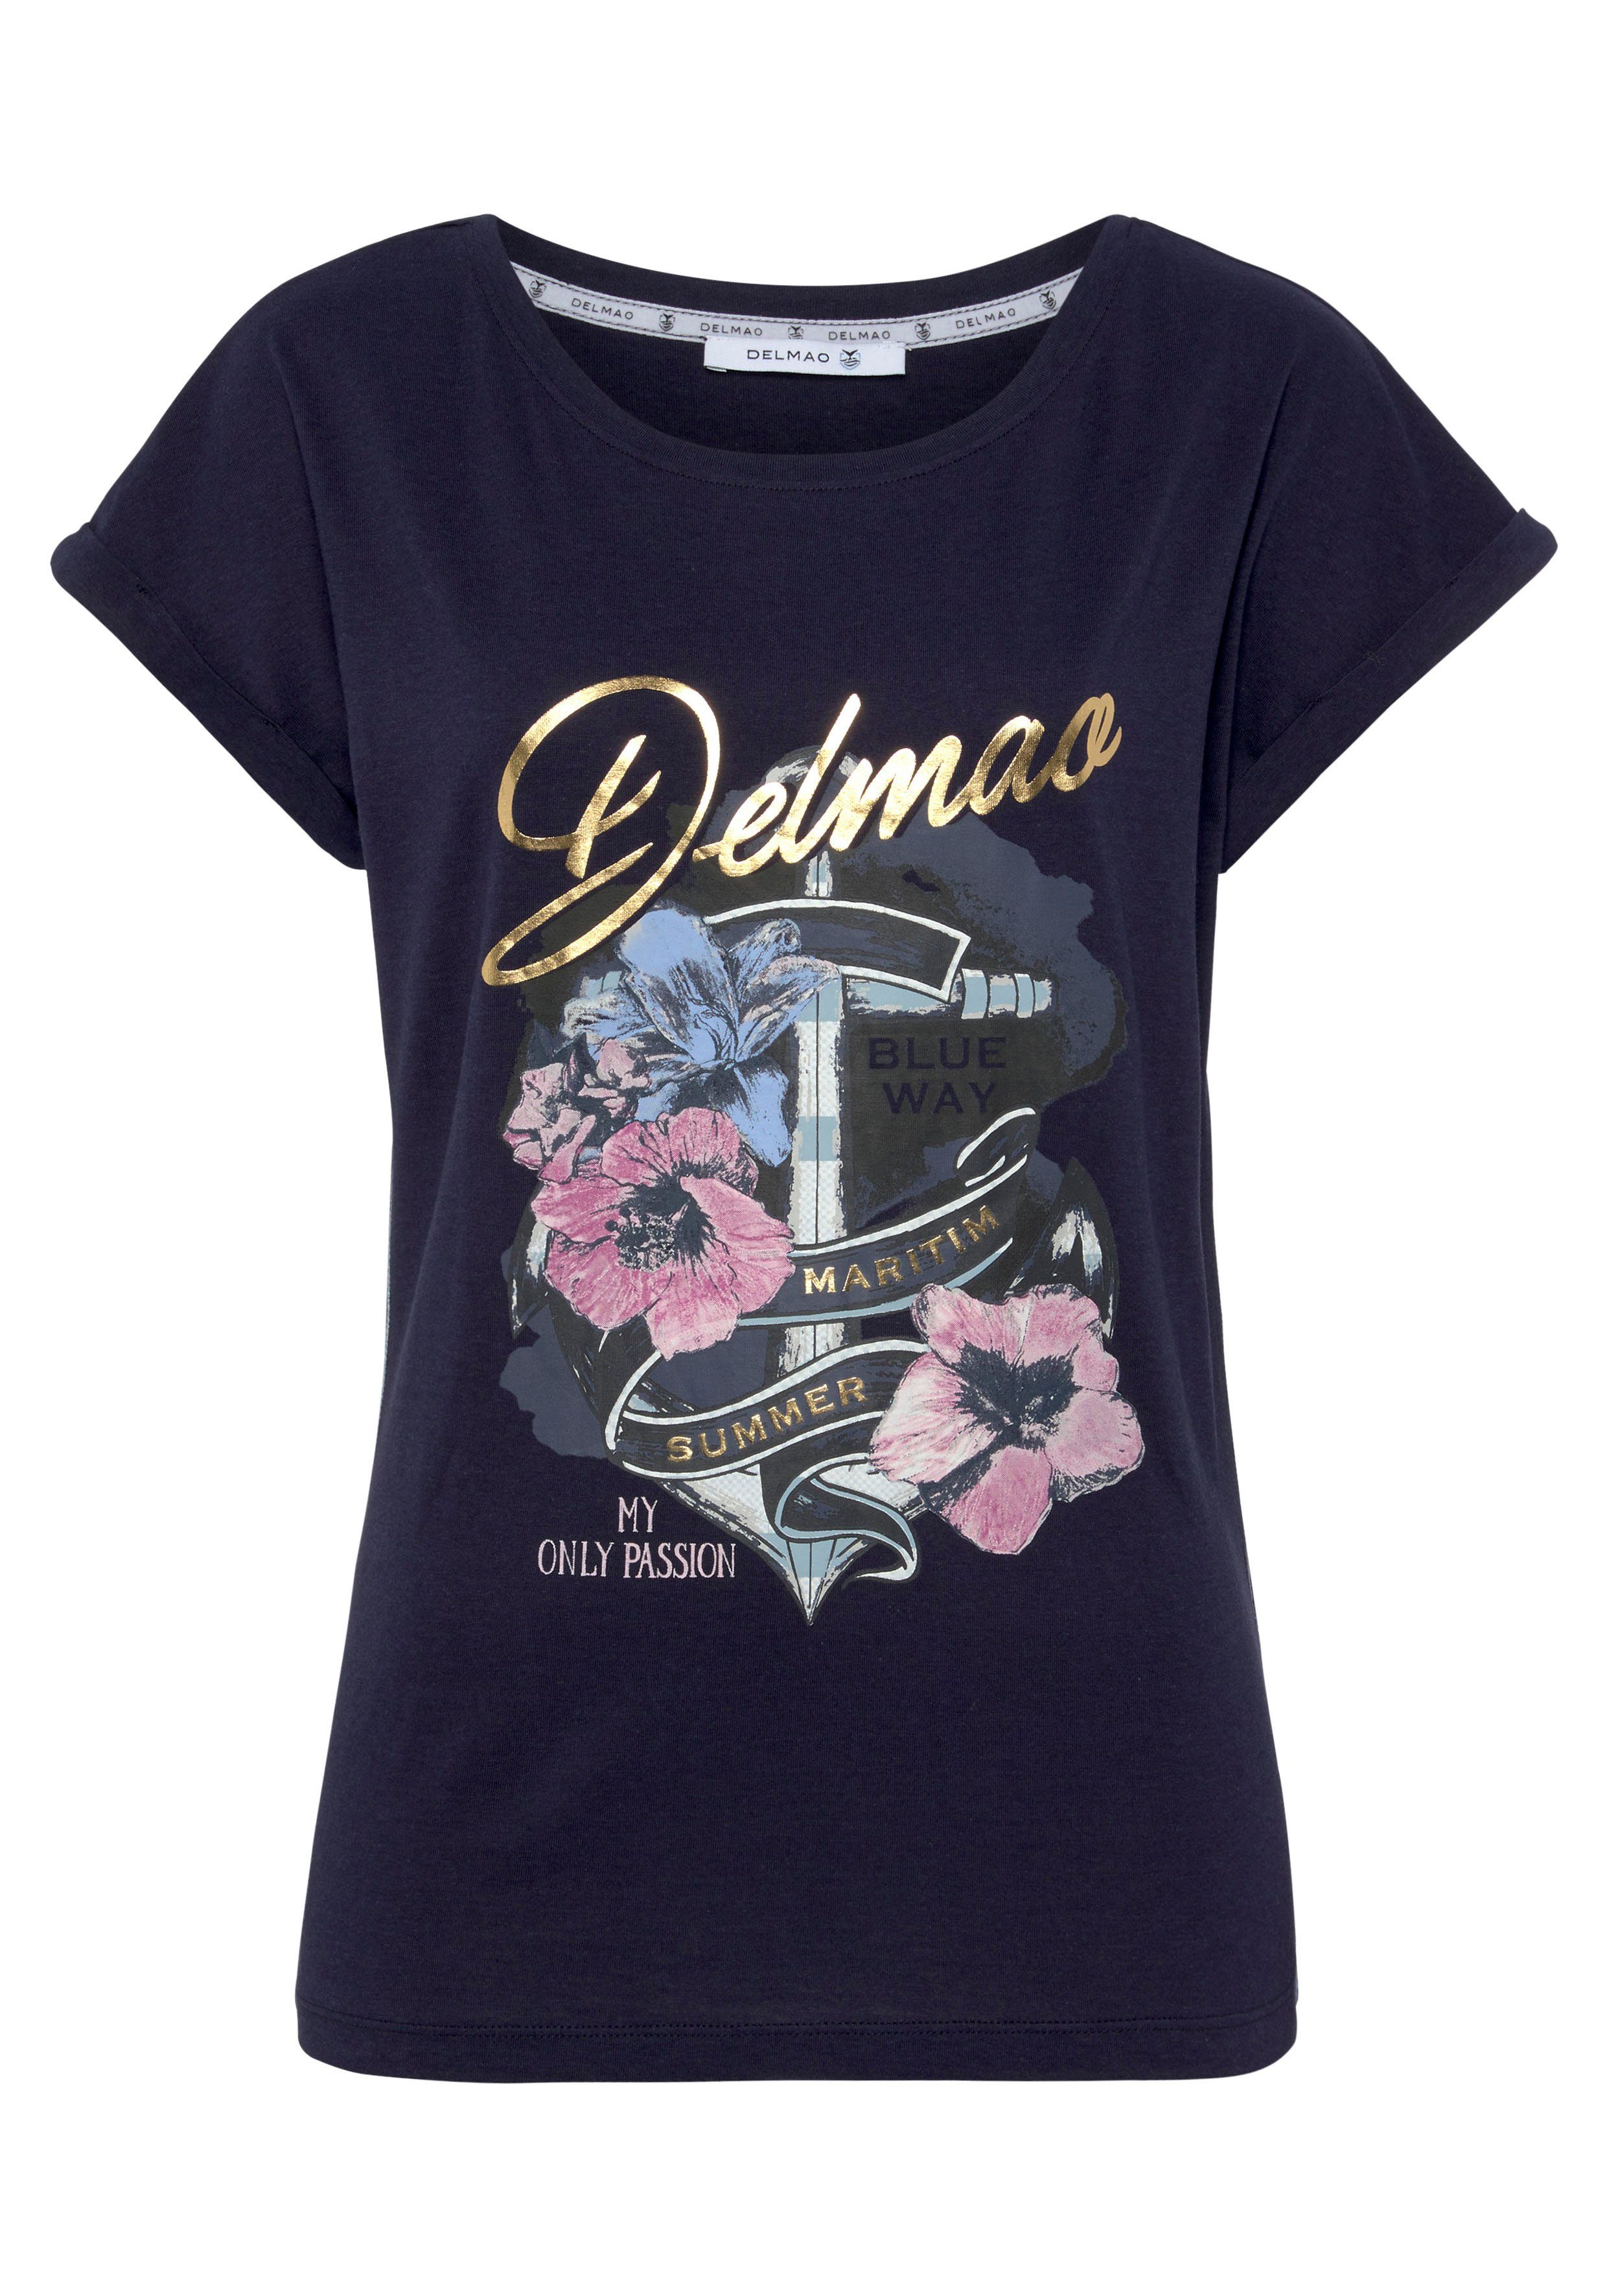 DELMAO Print-Shirt mit geblümten Anker-Logodruck MARKE! NEUE 